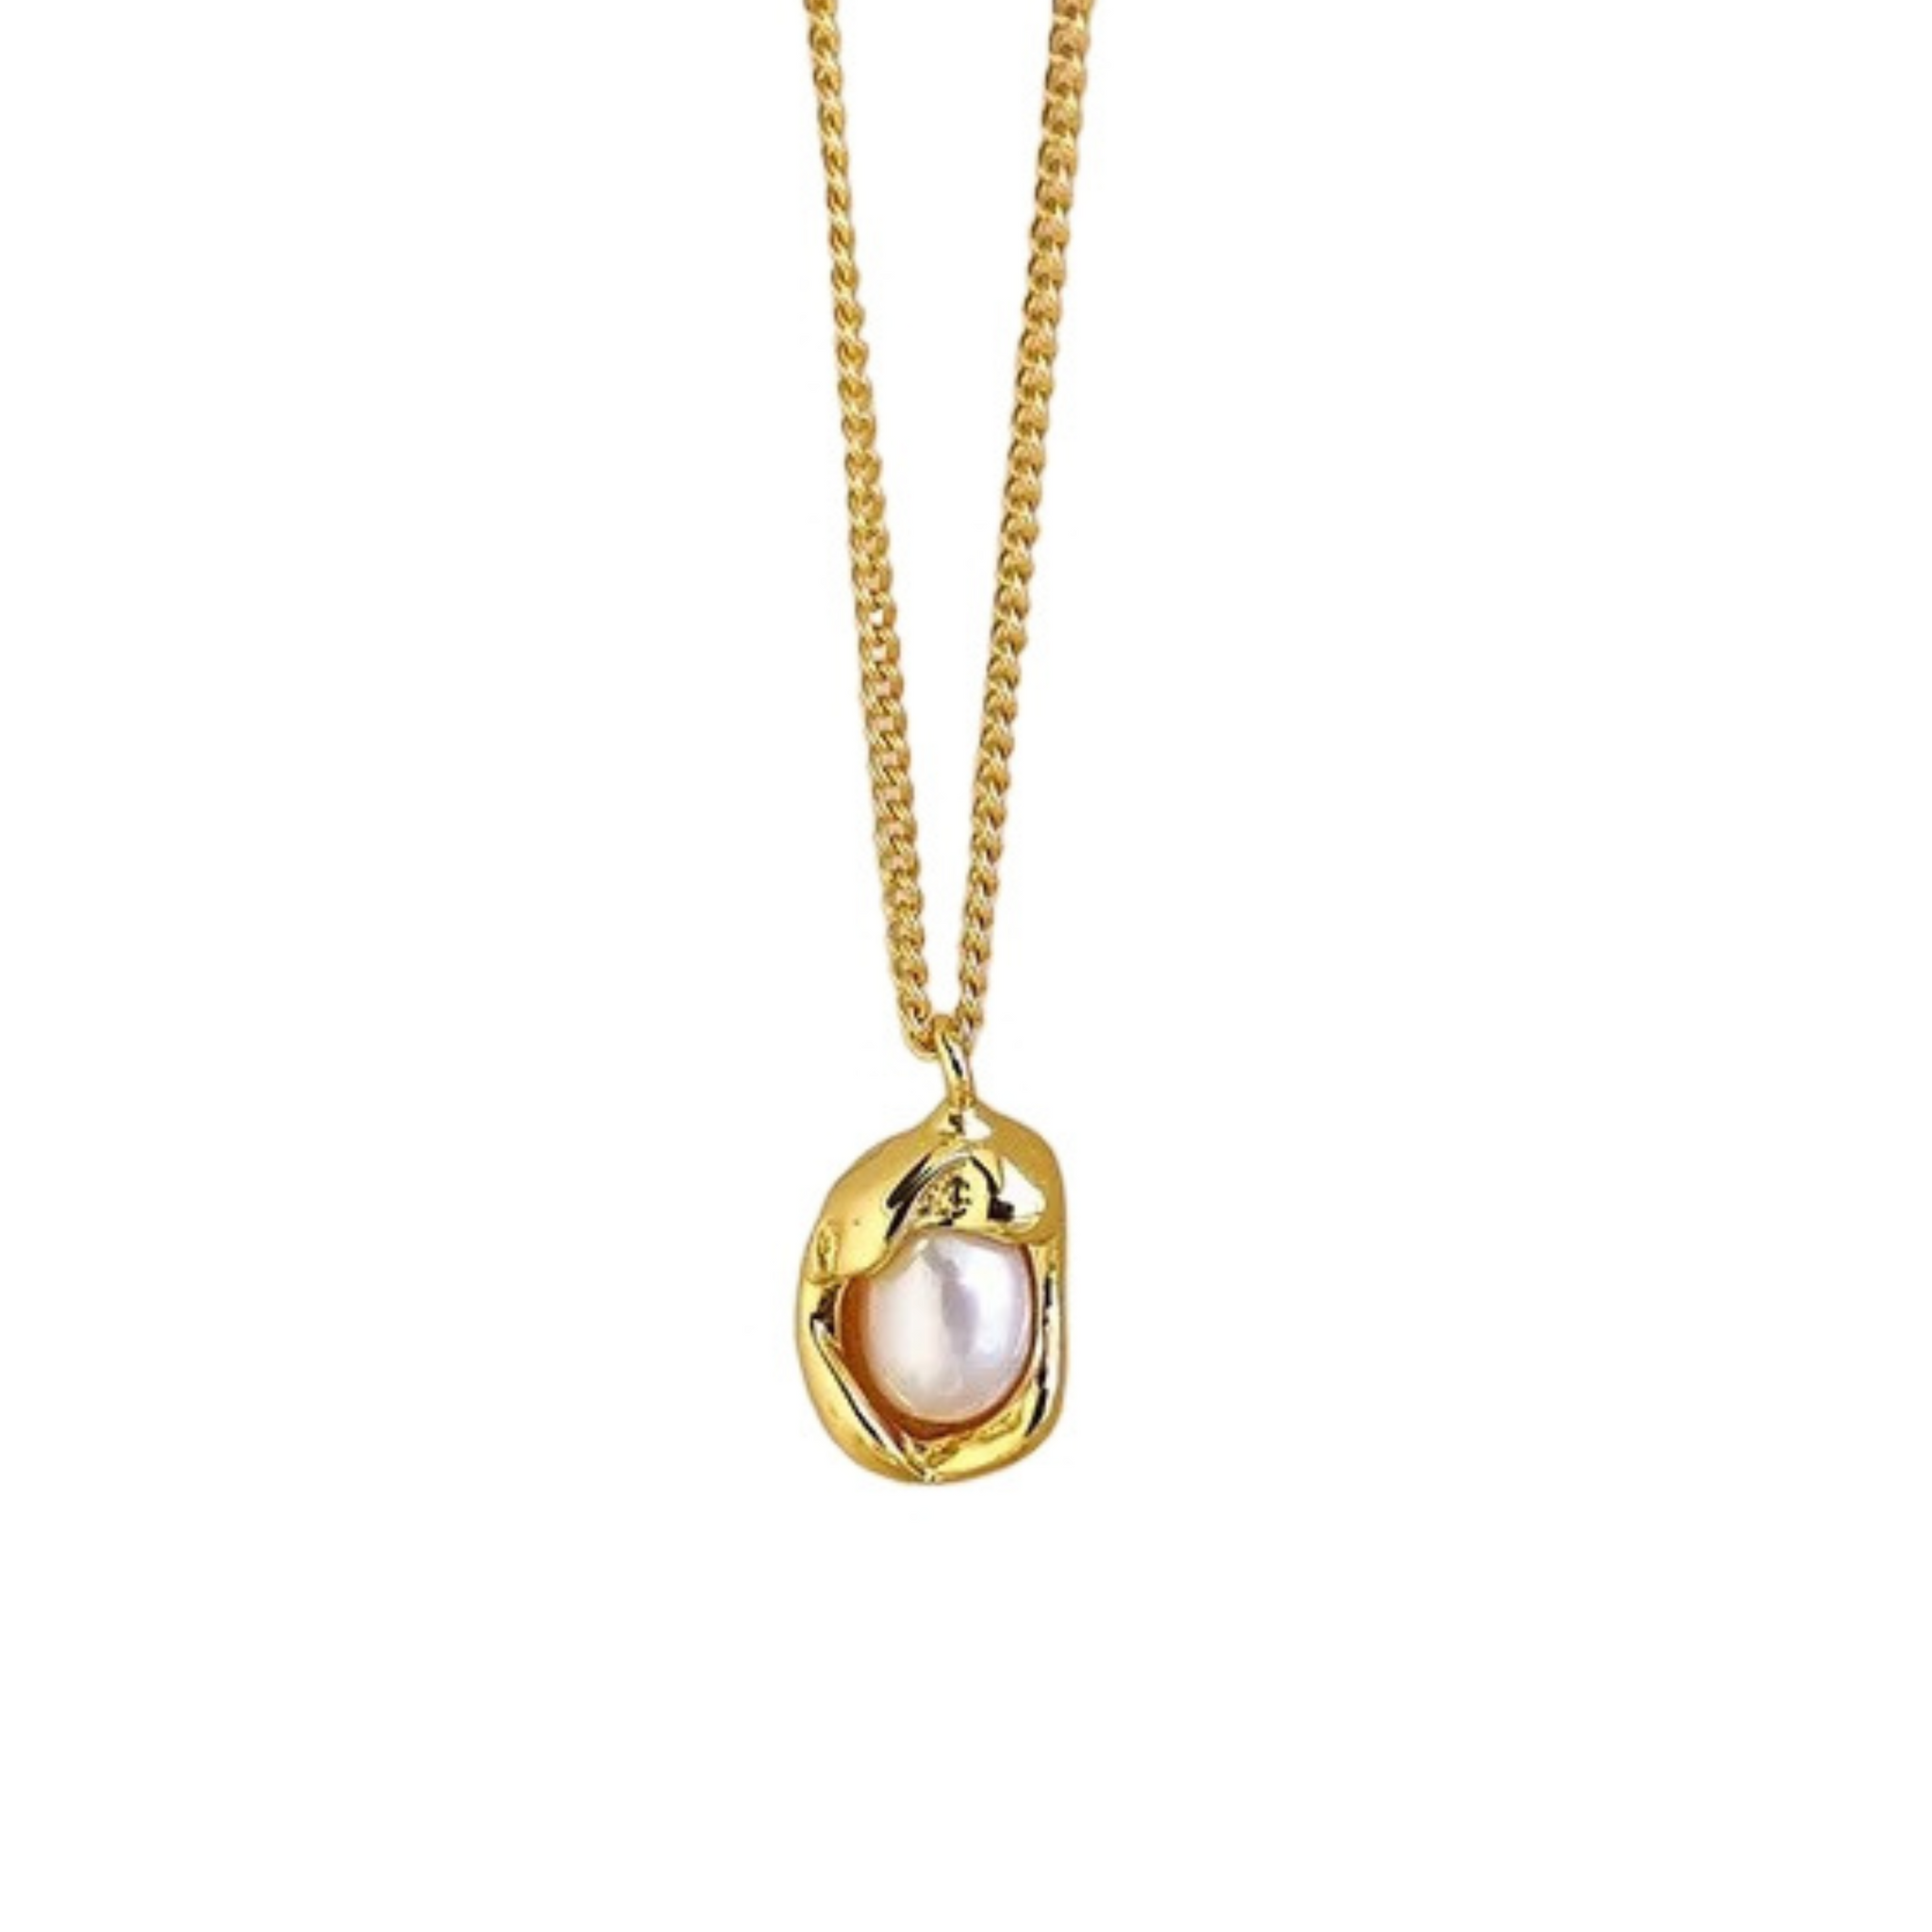 Selma halskæde i guld.  Flot kæde med vedhæng med perle.  Materiale: S925 sterling sølv, 14 karat, guldbelagt, perle Størrelse: 40-45 cm, kan justeres